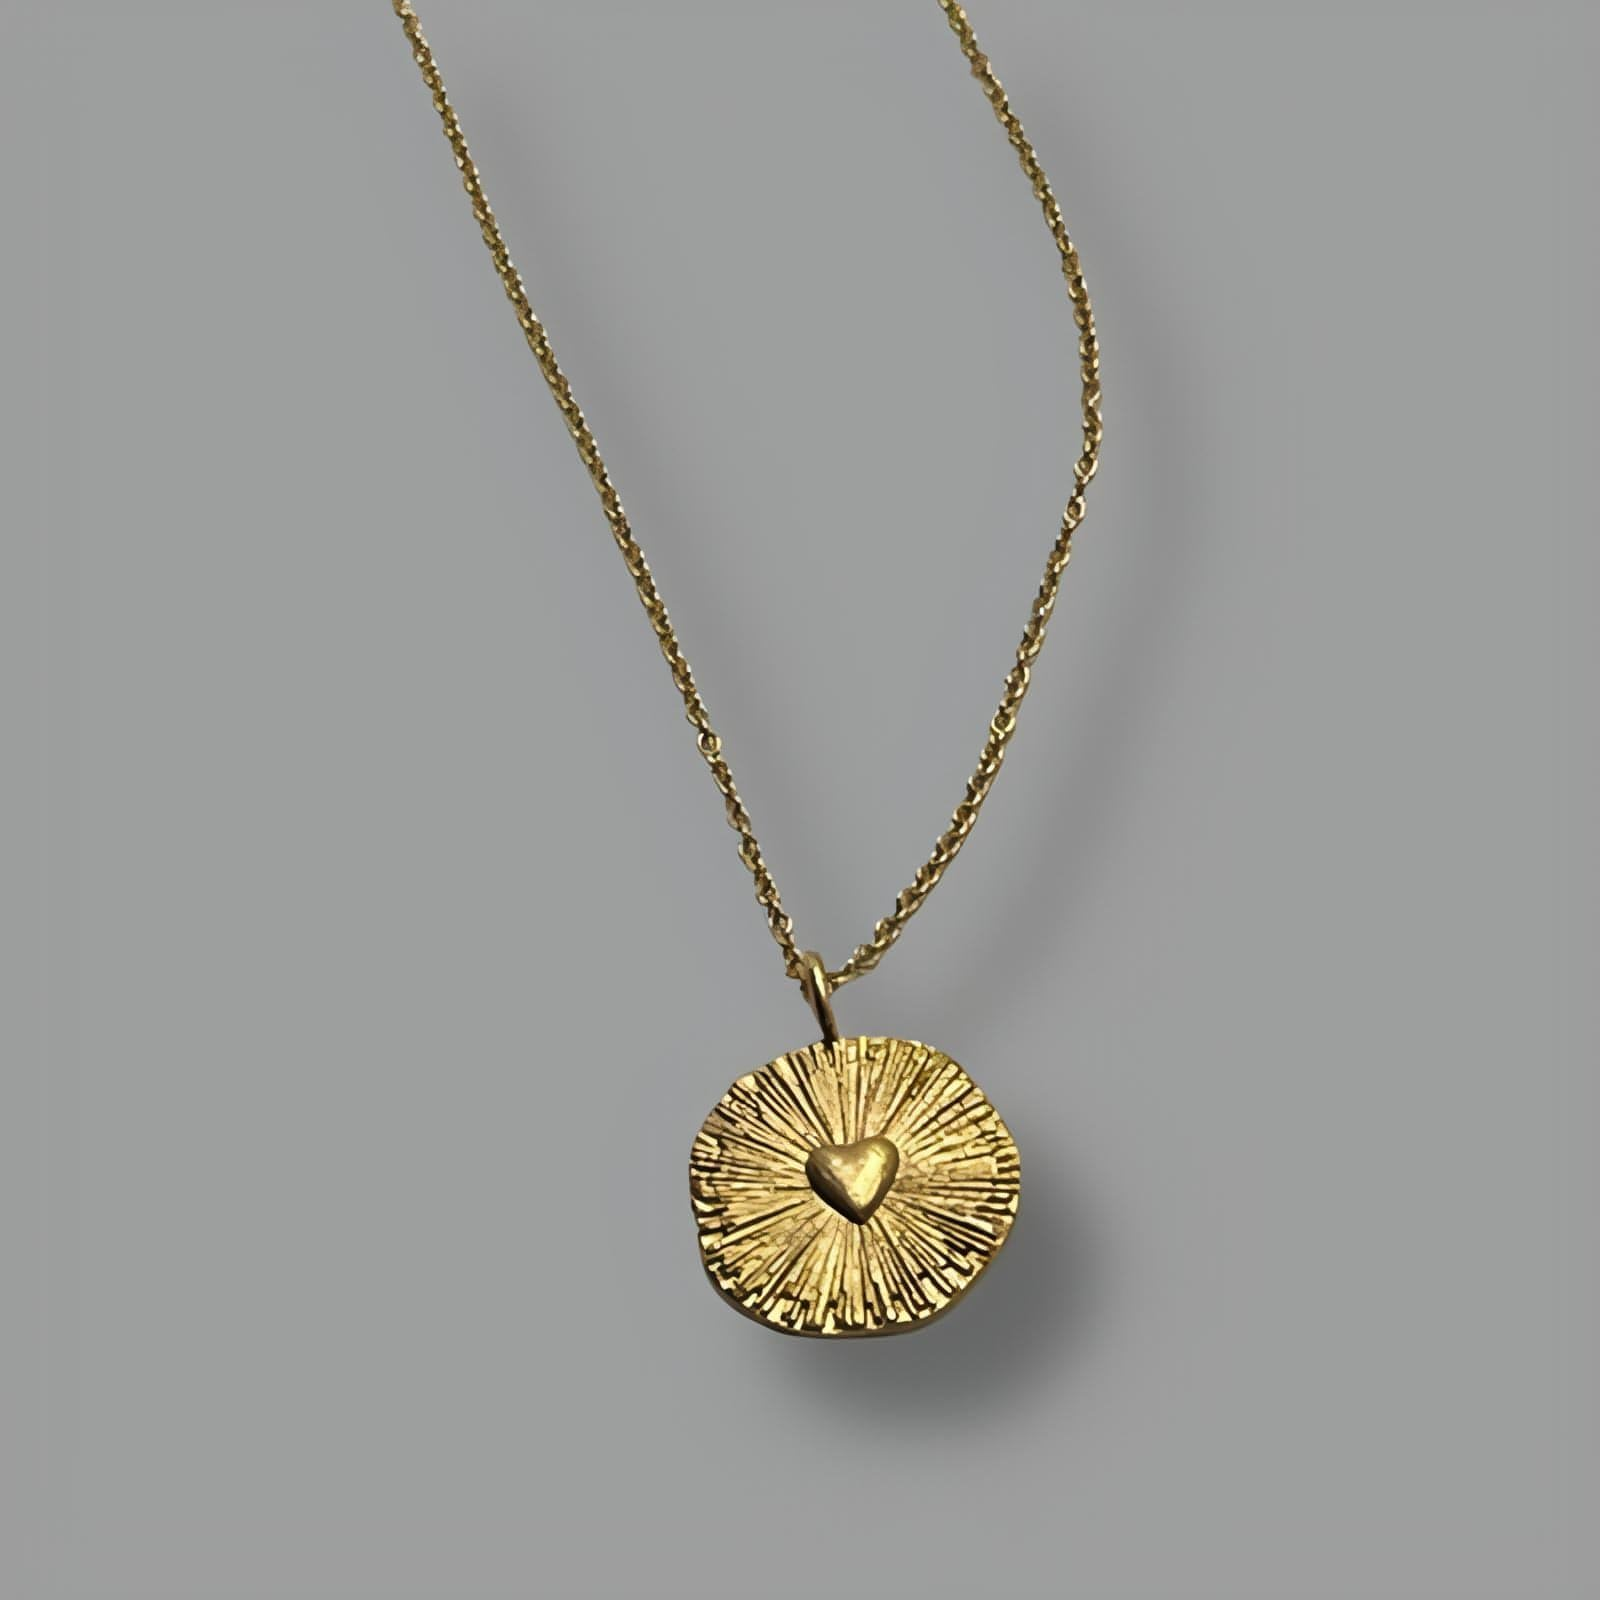 AURONOS Prestige Rose Gold 18K Omega Necklace 42cm 1.4mm | Auronos